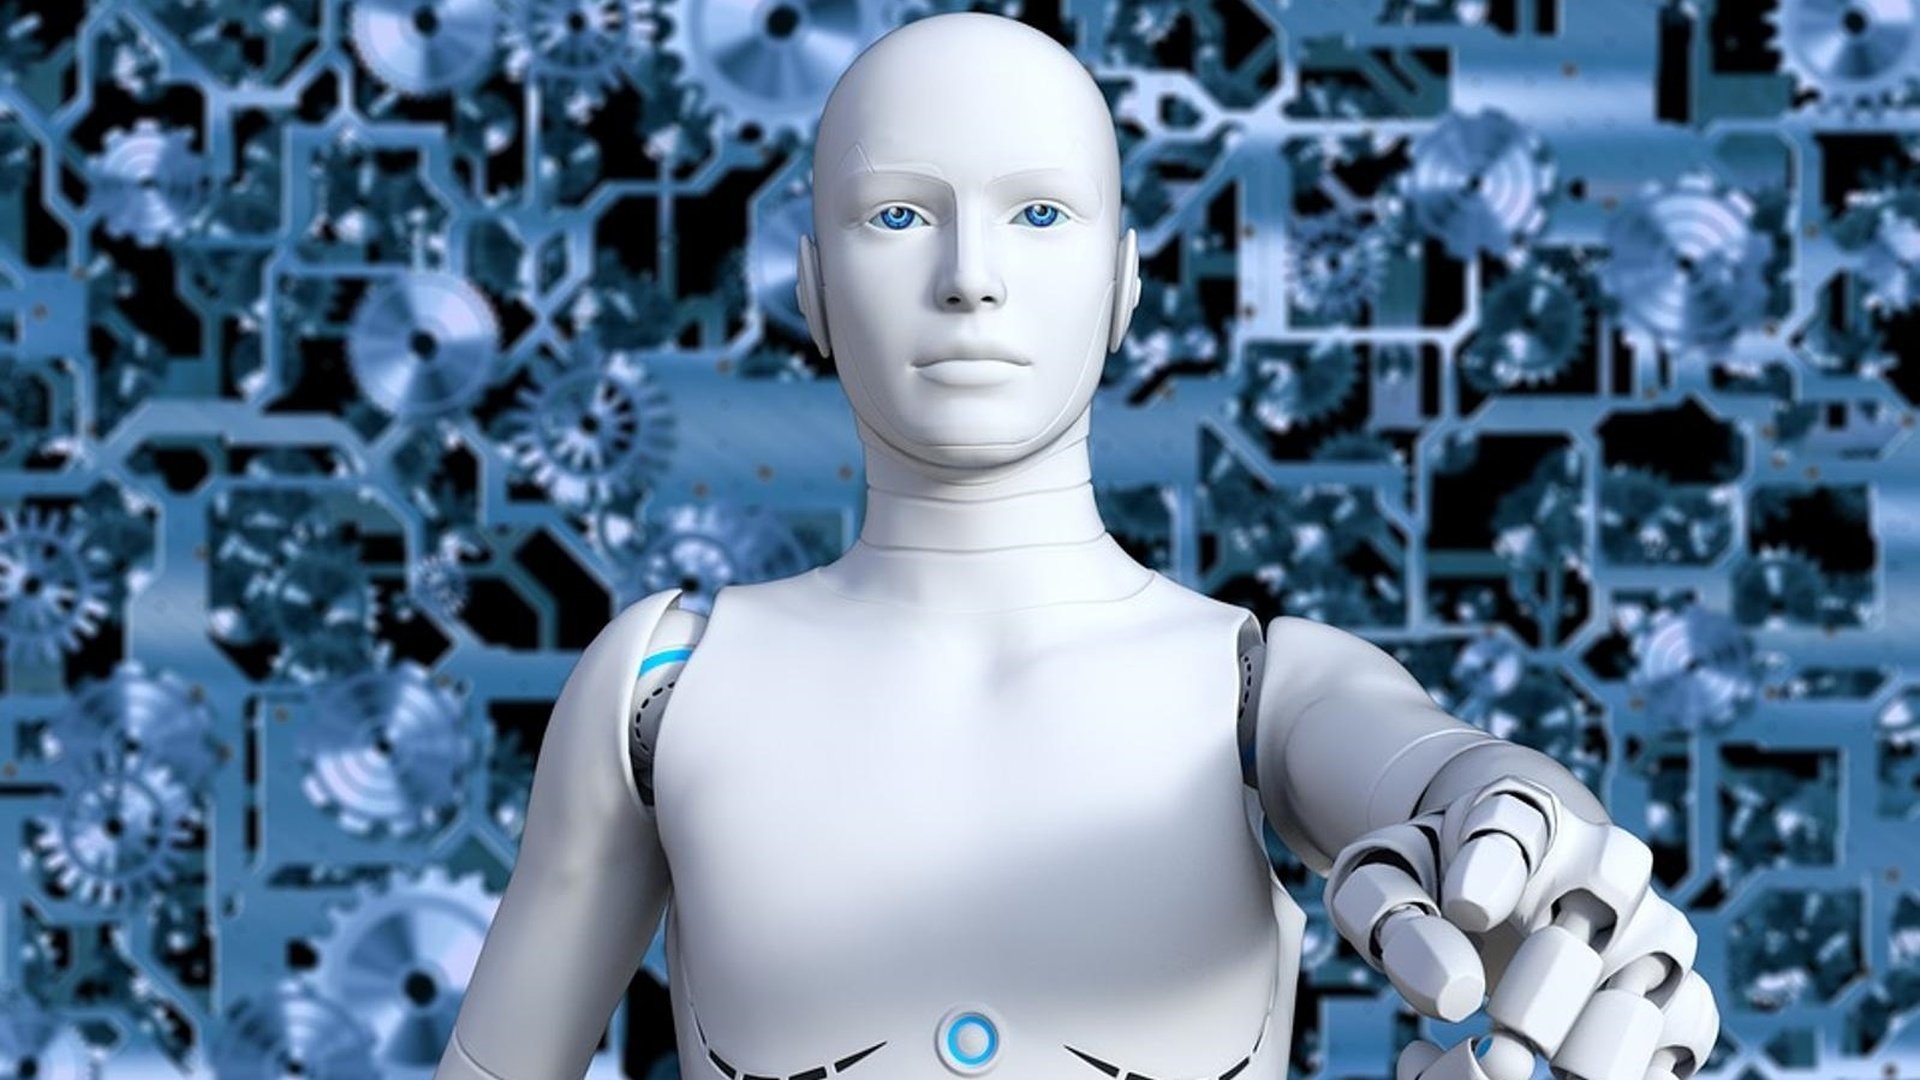 Тема человек и робот. Айзек Азимов искусственный интеллект. Робот с искусственным интеллектом. Робот человек. Роботы заменят людей.